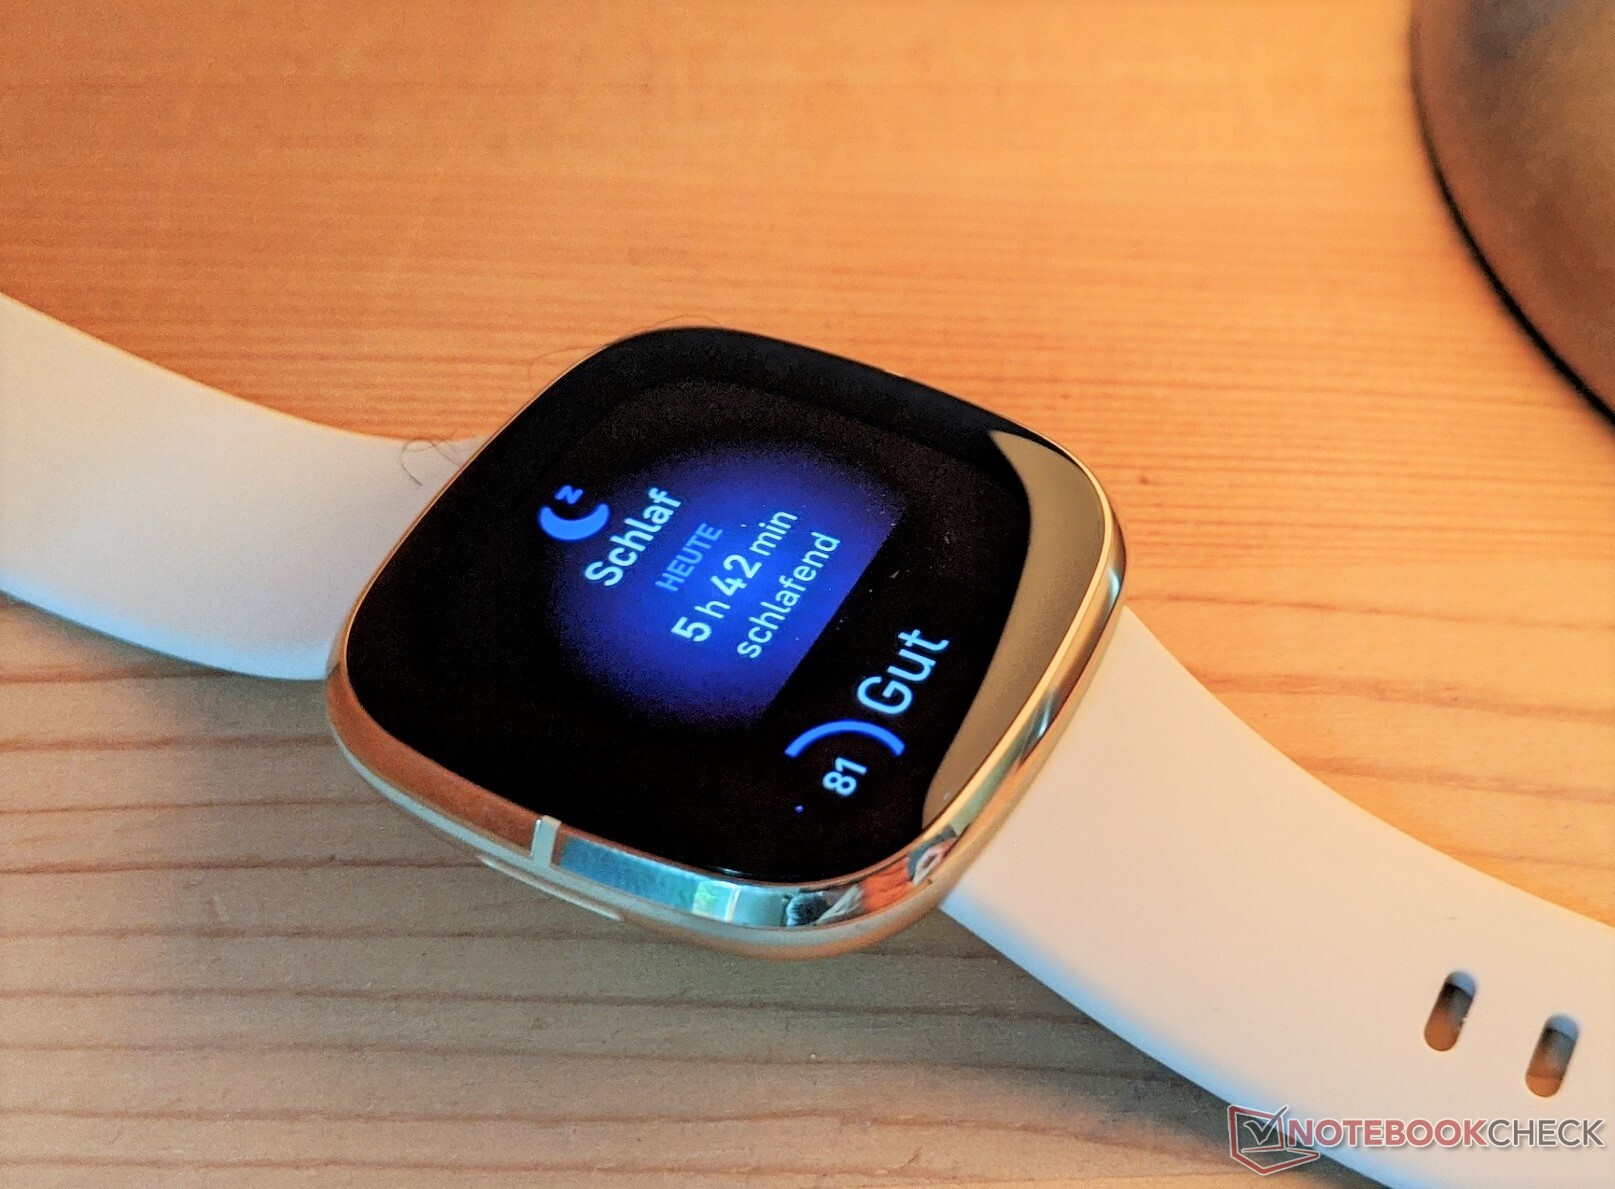 El smartwatch puede medir la tensión arterial de forma fiable?